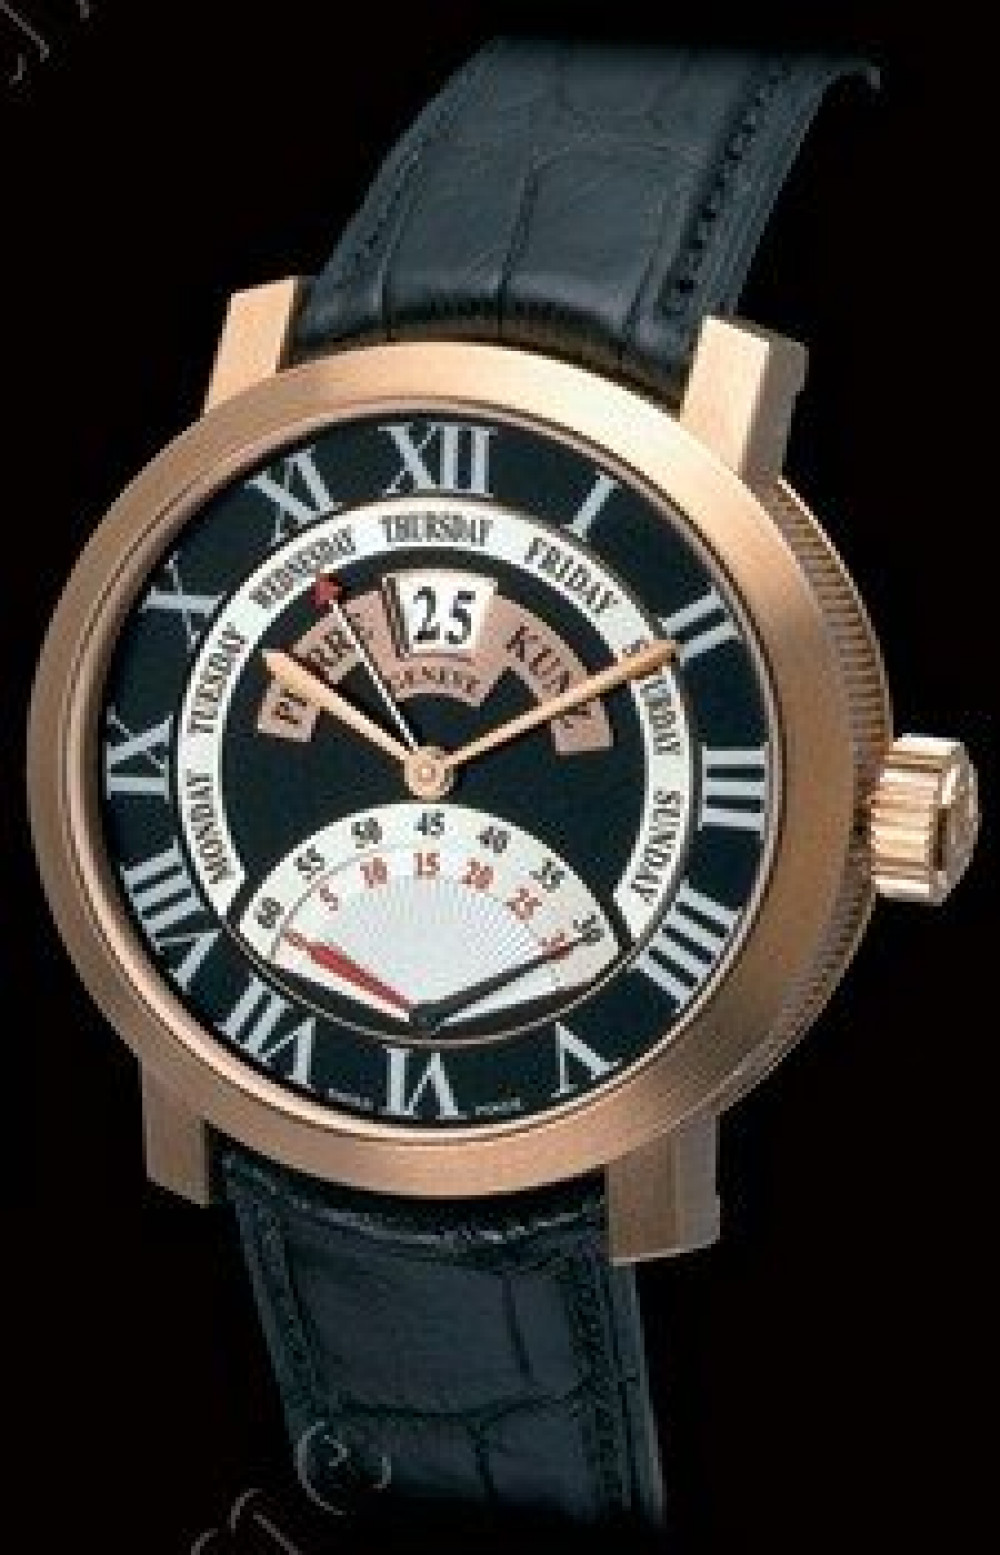 Zegarek firmy Pierre Kunz, model G009 GD